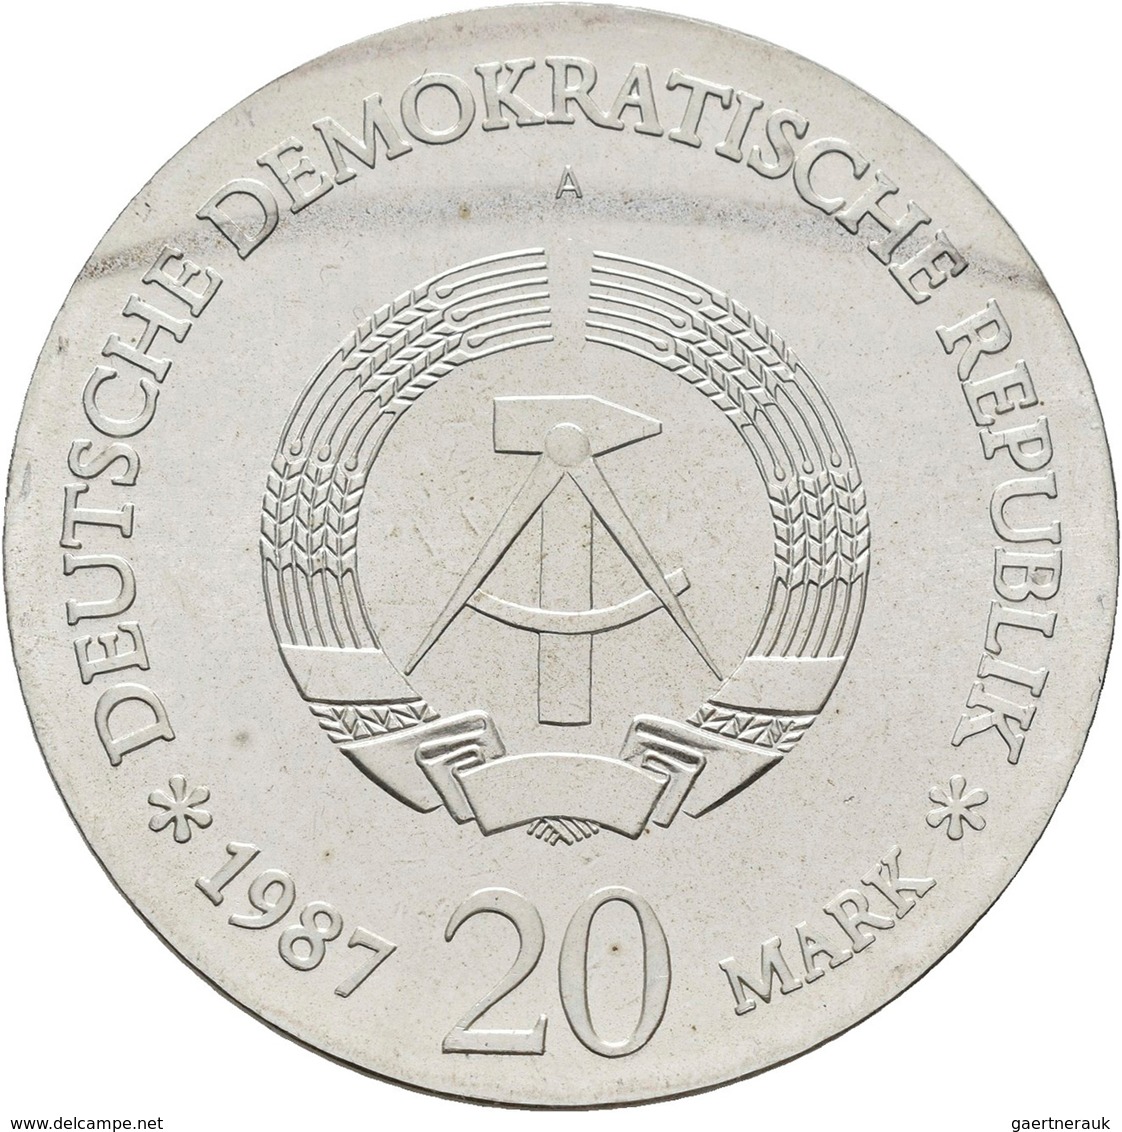 DDR: Typensammlung DDR aufbewahrt in 2 DUCAT-Albums. Kleinmünzen von 1 Pfennig bis 2 Mark sowie auge